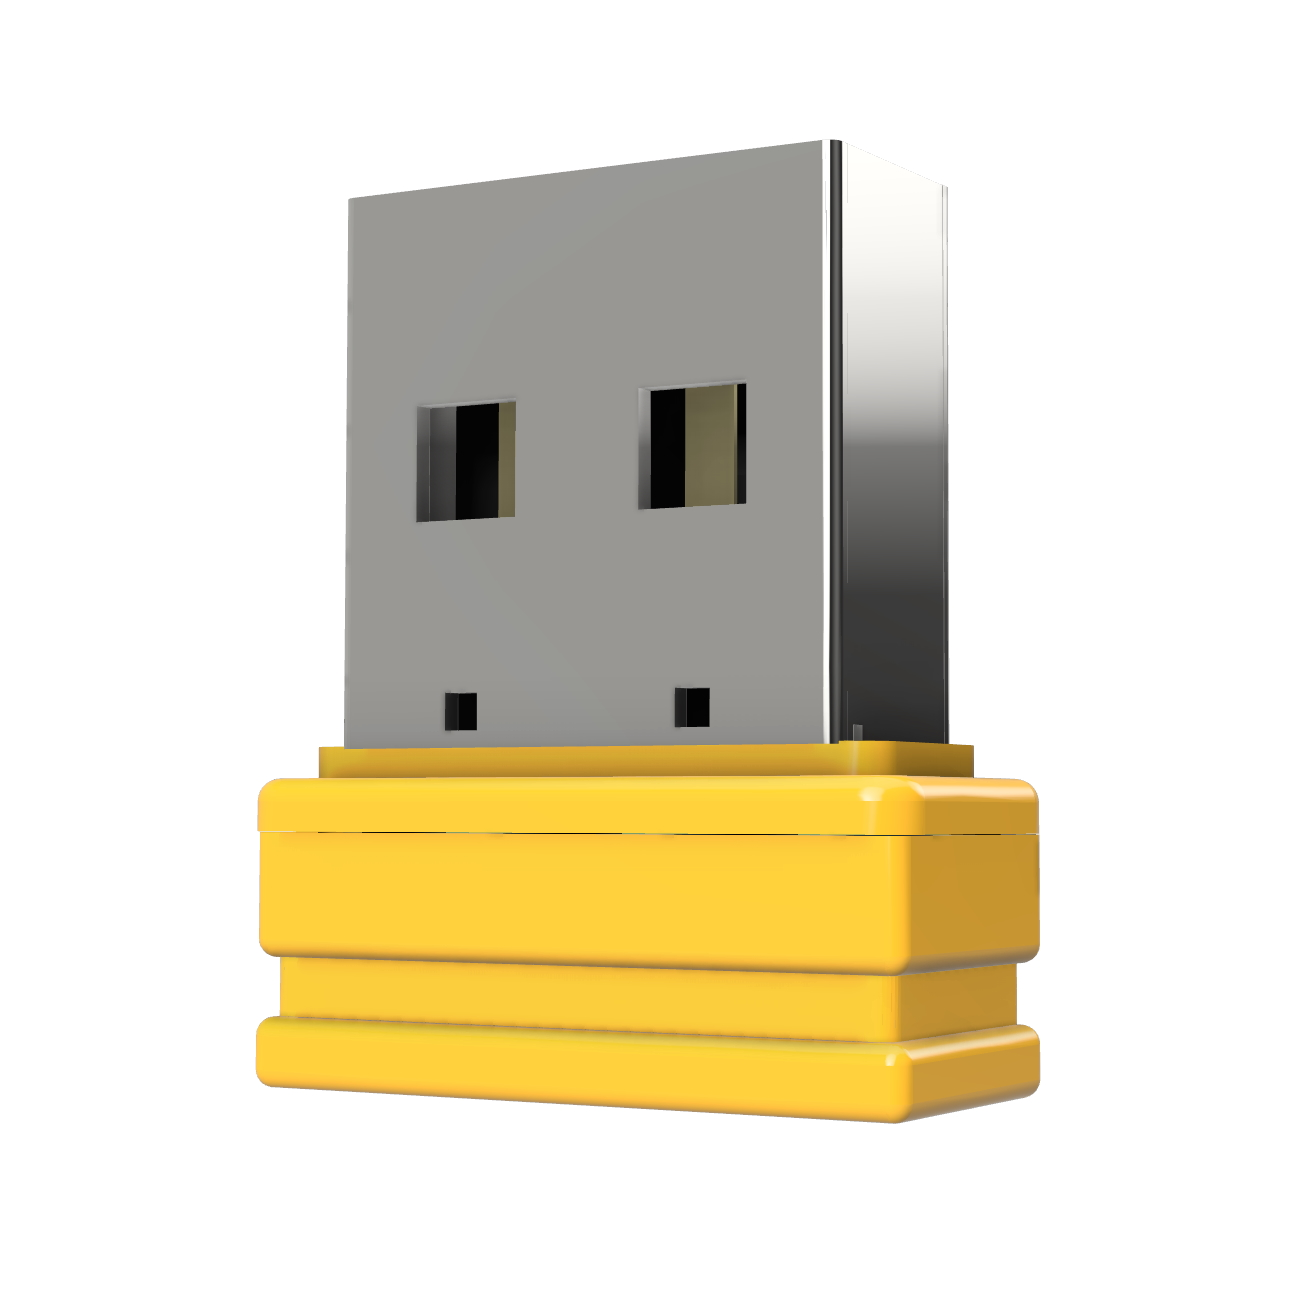 Mini P1 USB GERMANY GB) (Gelb, ®ULTRA 1 USB-Stick